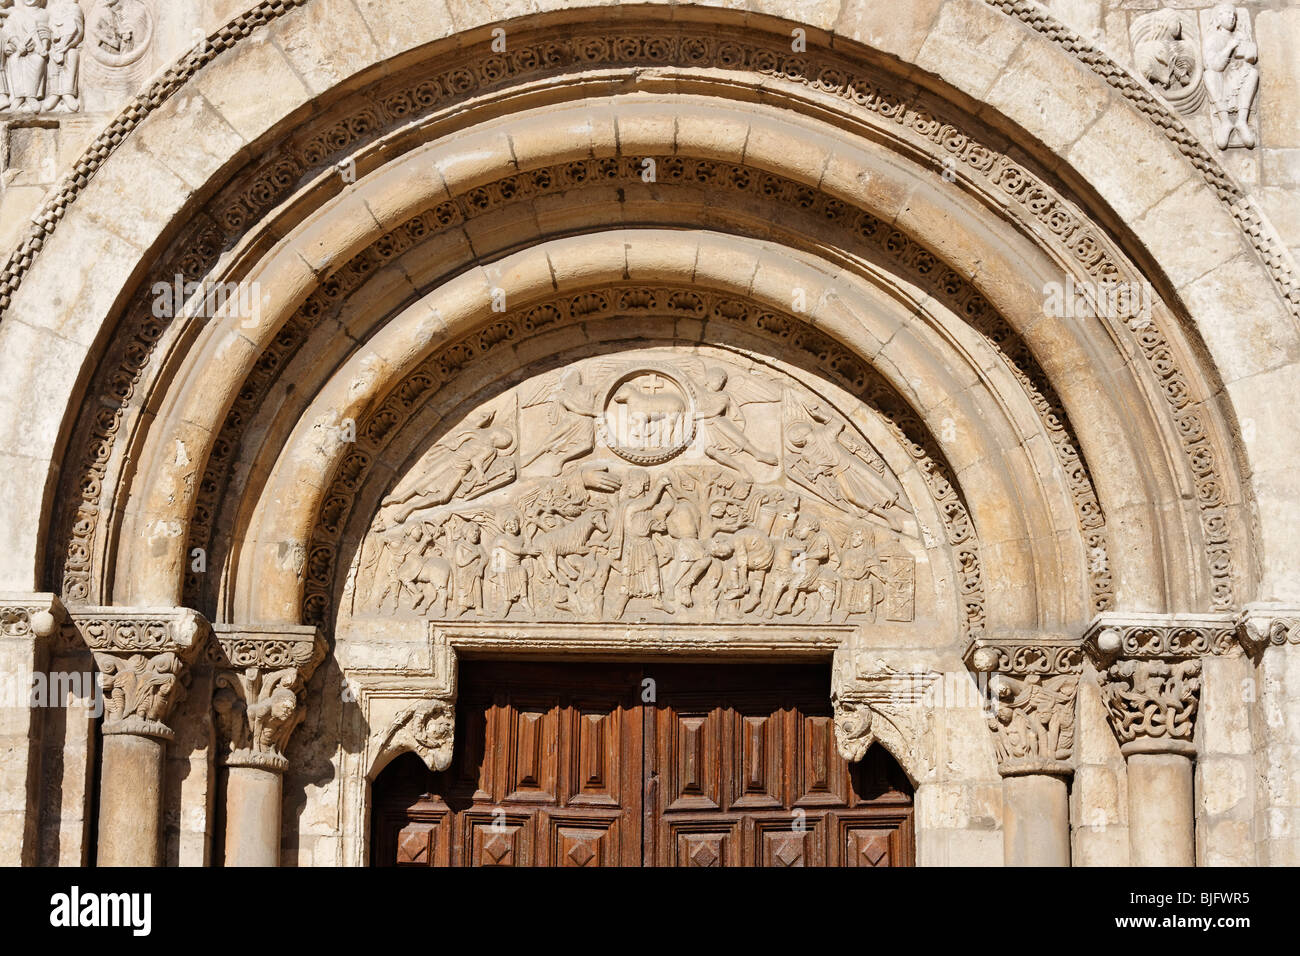 Romanesque lamb's door 'puerta del cordero' of the St Isidoro Basilica in the city of León Stock Photo